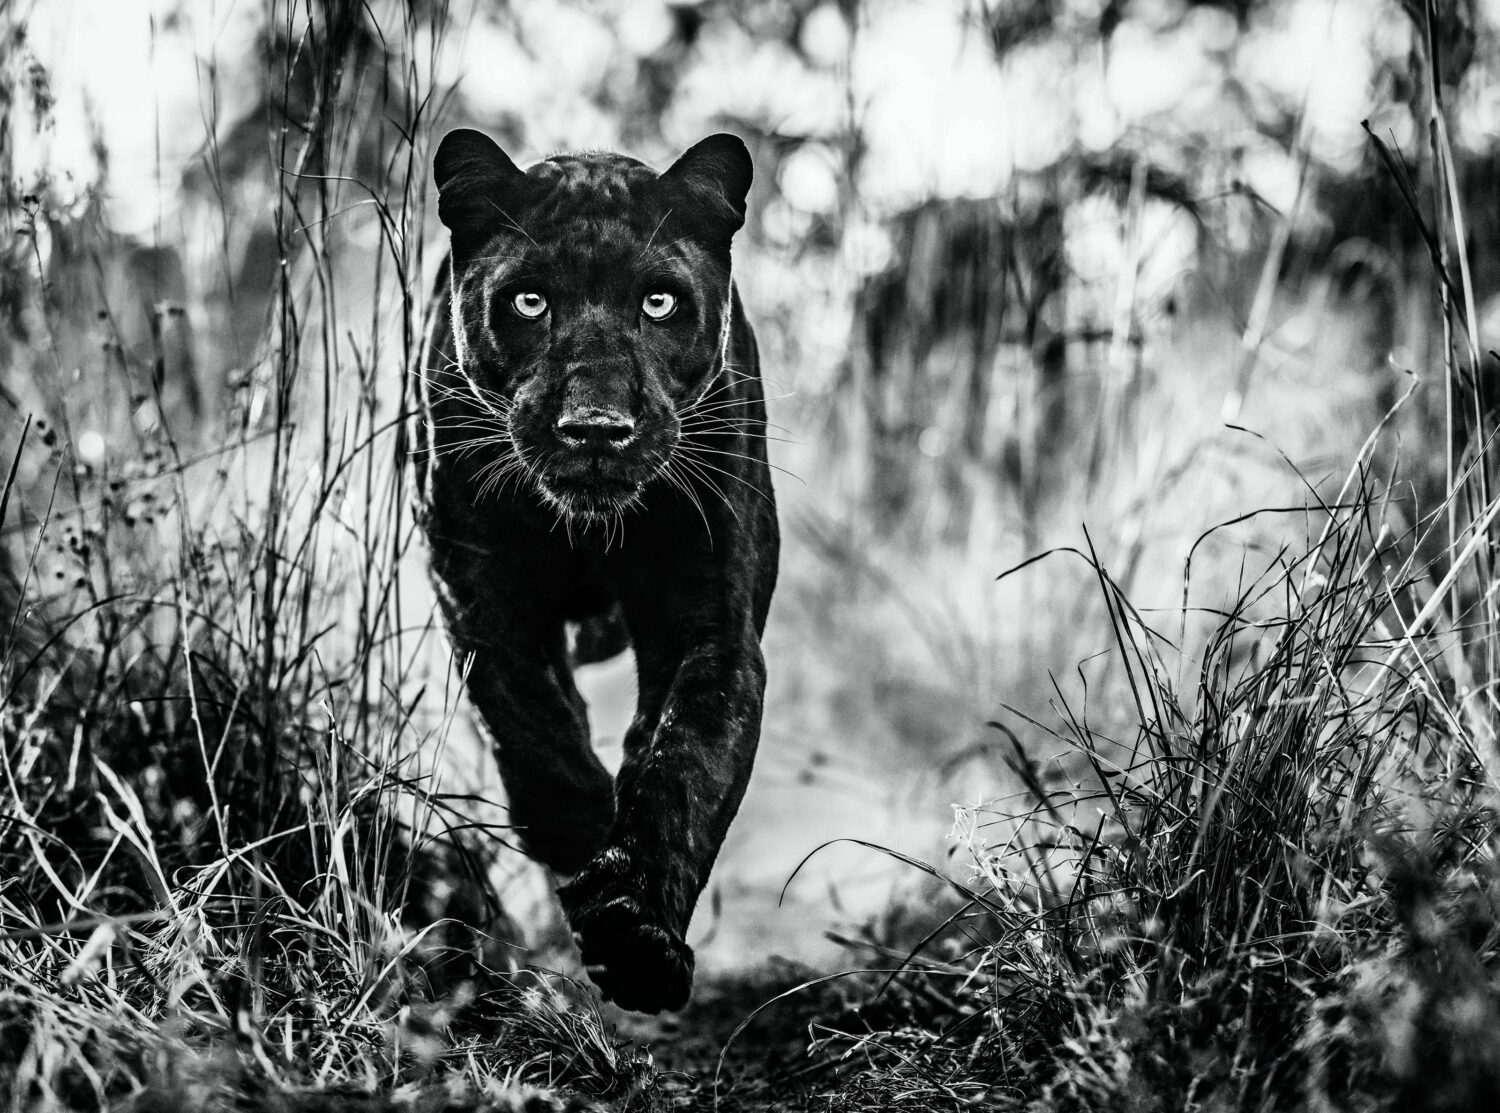 David Yarrow: The Black Panther Returns